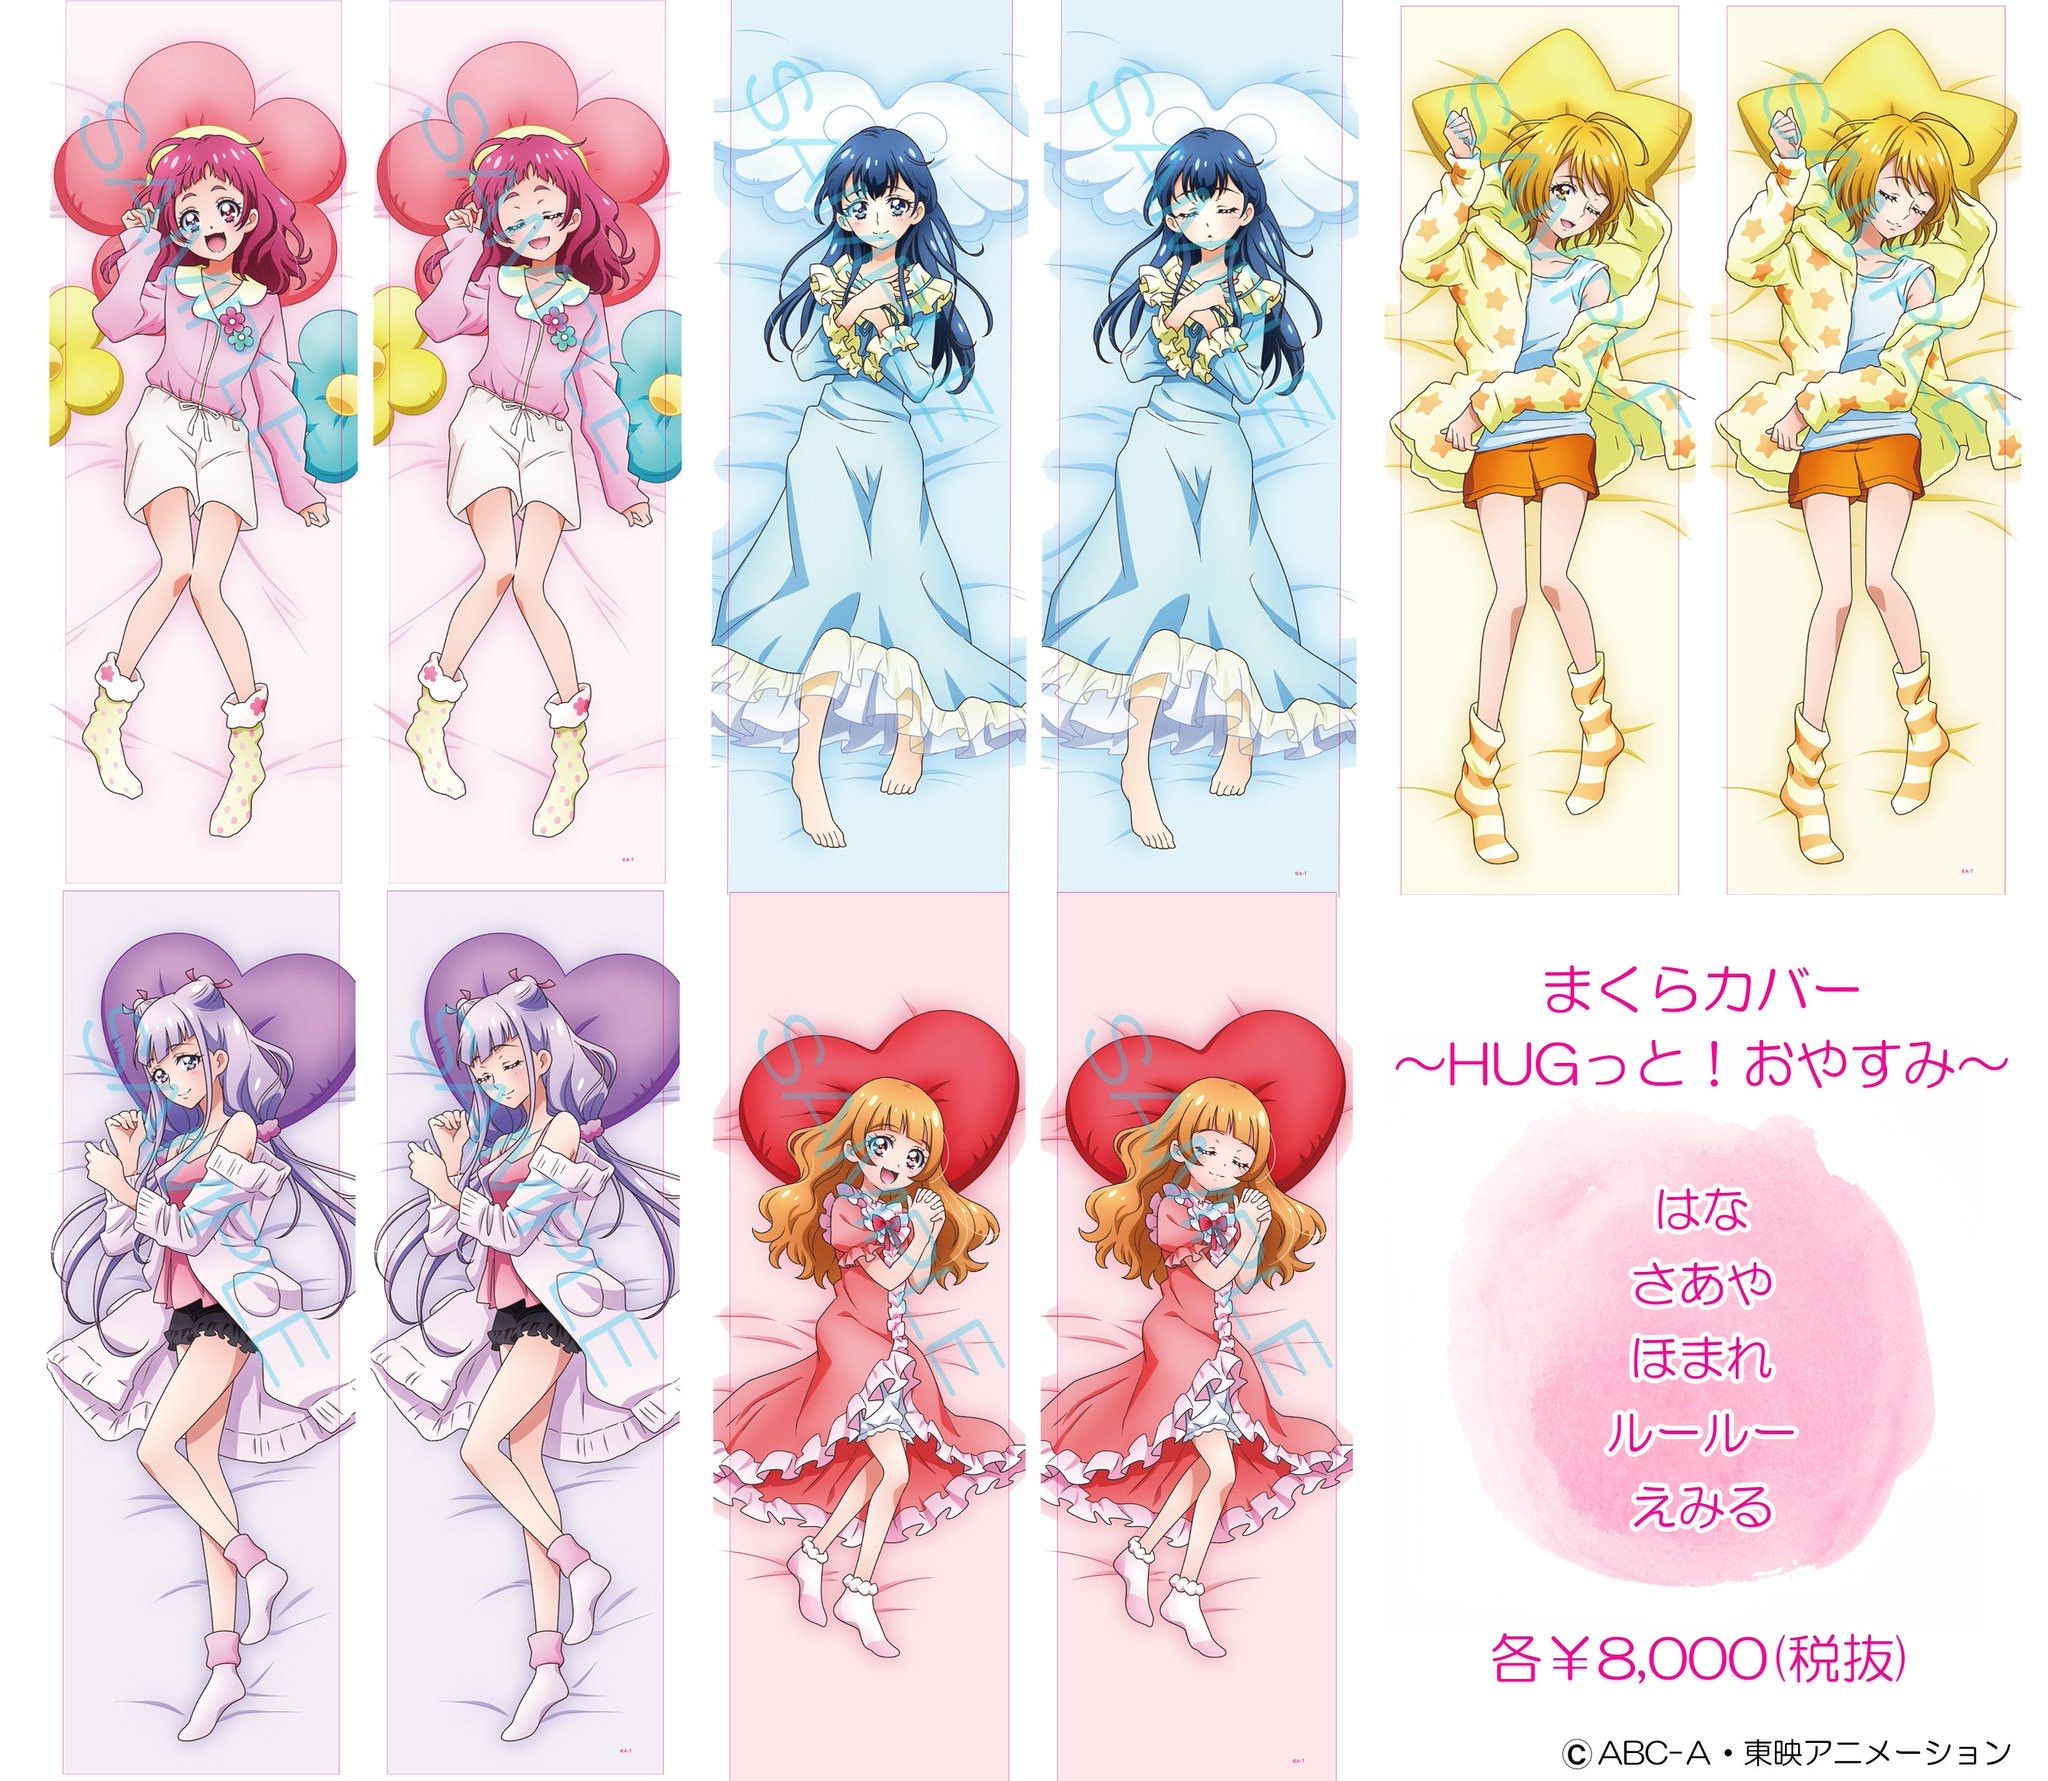 【Sad news】Girls' anime sells naughty body pillows 5